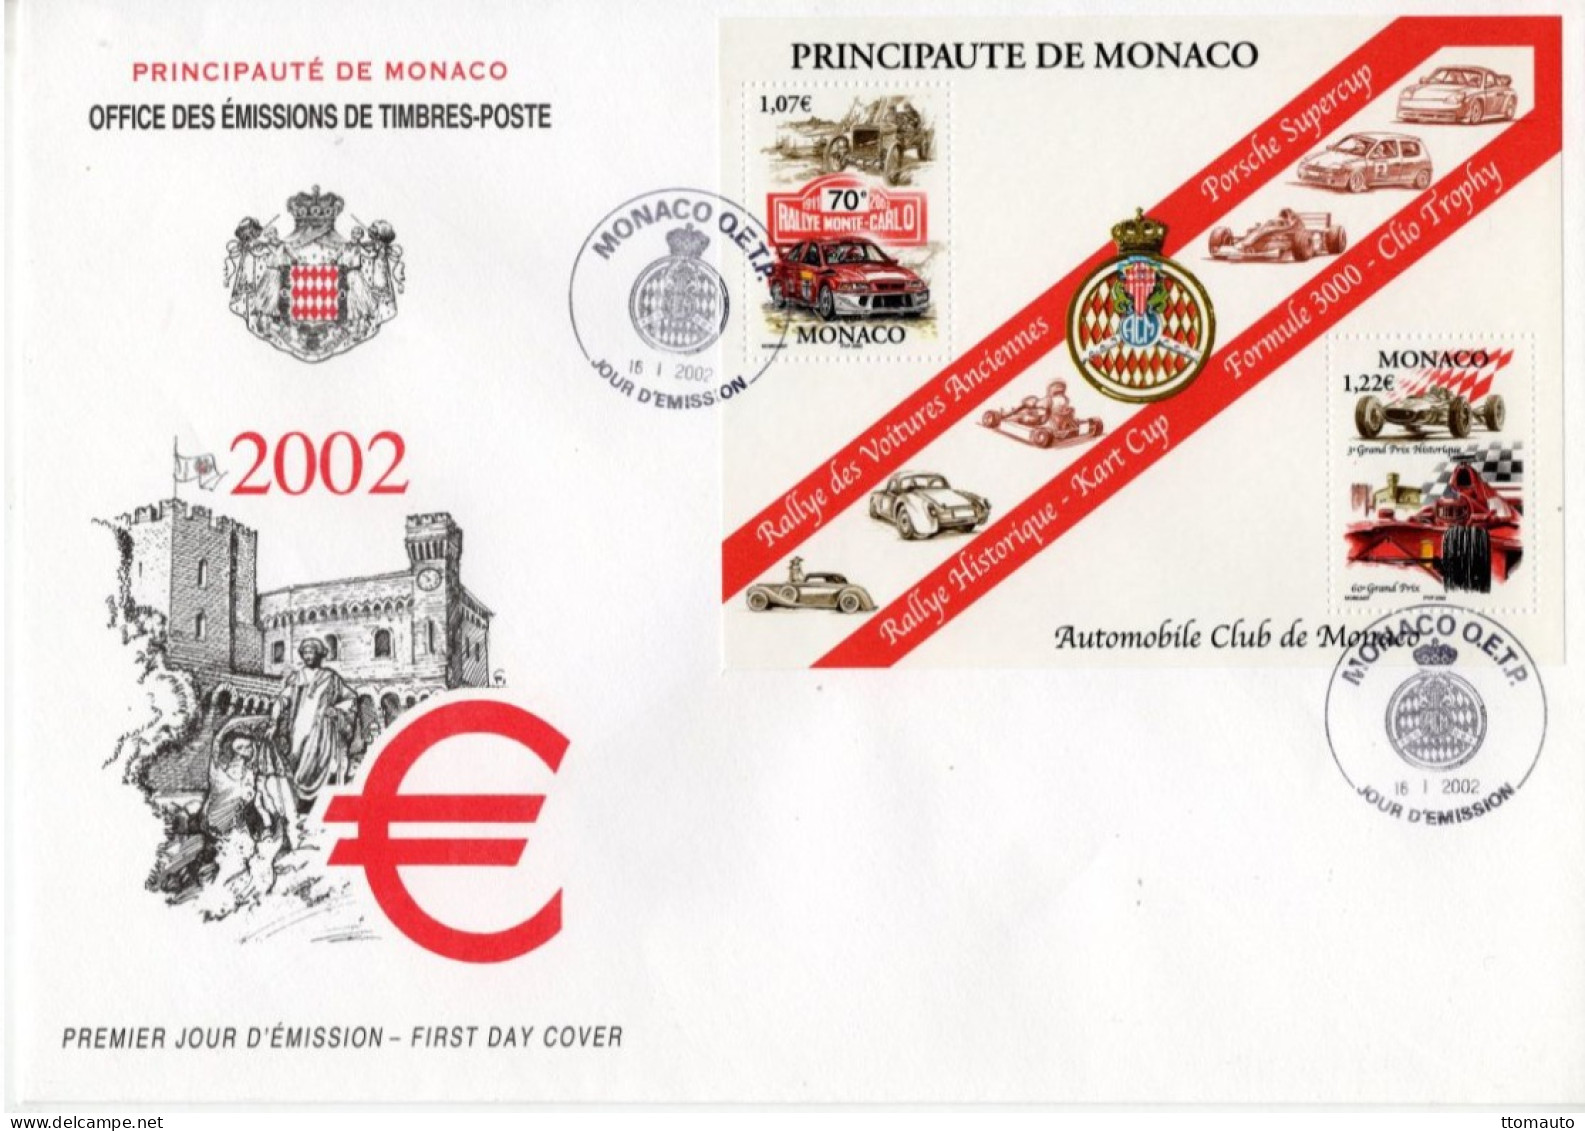 Automobile Club De Monaco - Rallye-Porsche-Kart-Clio-F3000 - Monaco 2v MS Envelope FDC - Prémier Jour D'Emission - Automobile